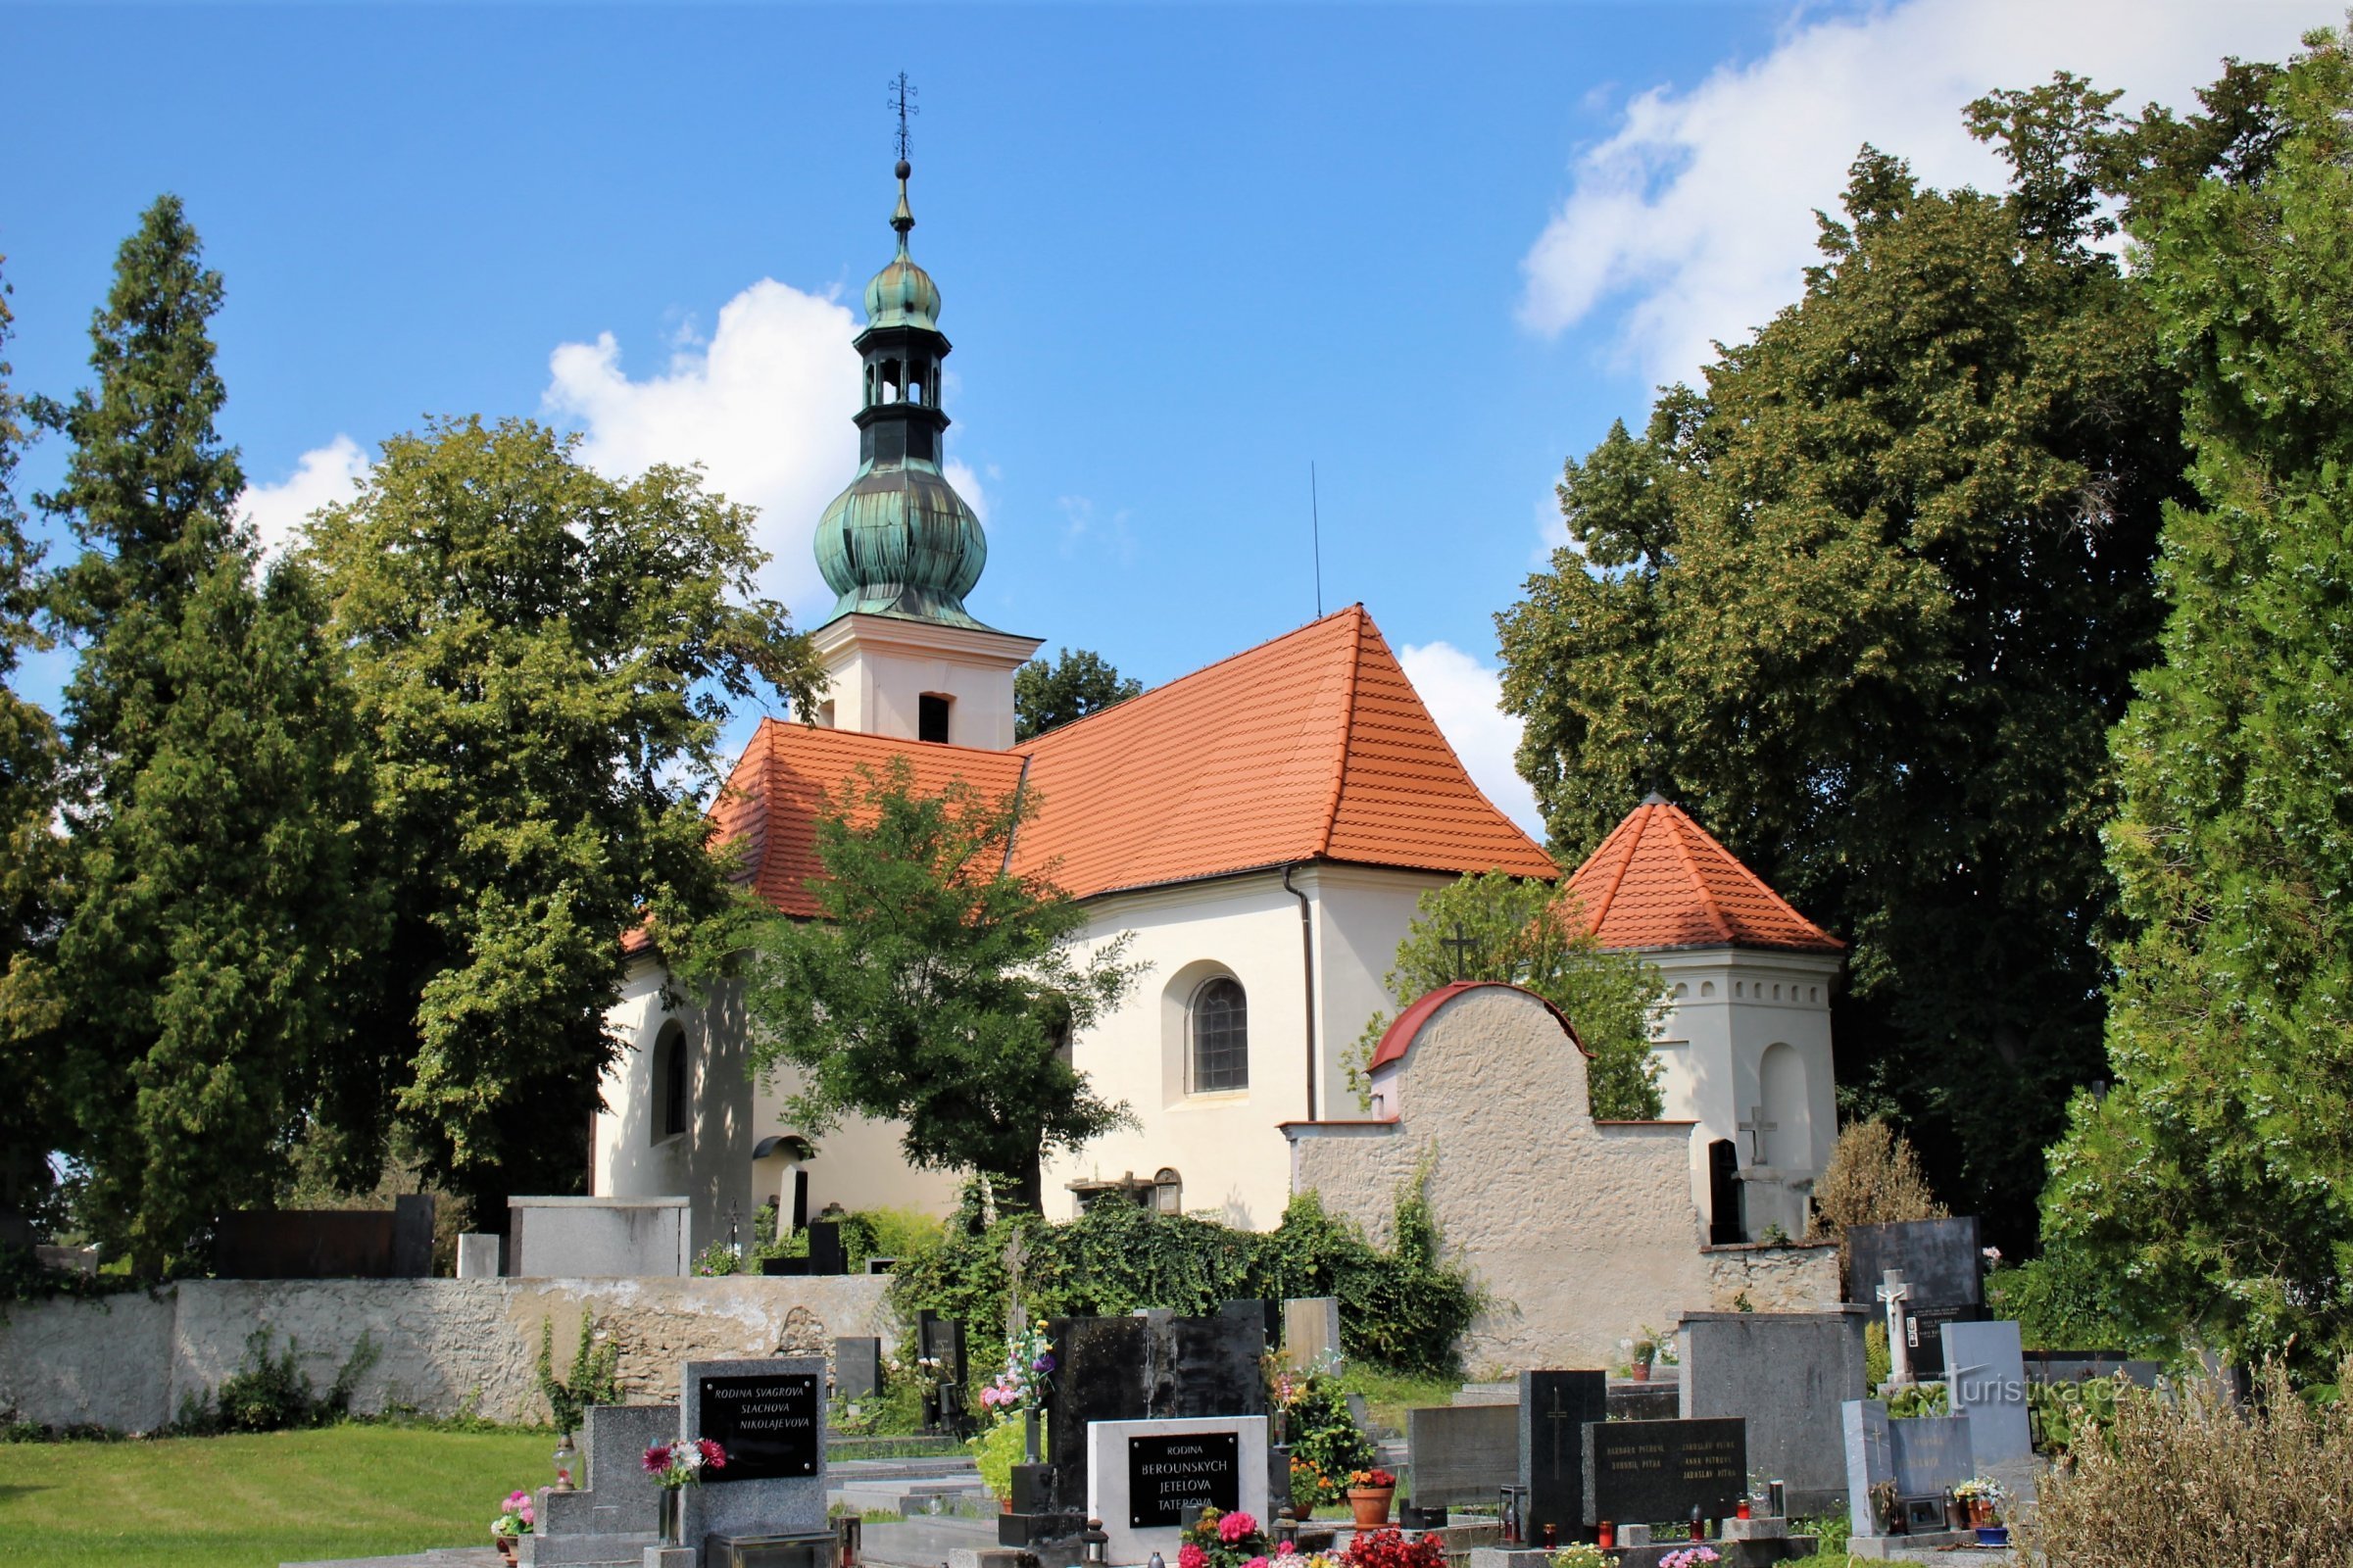 Widok ogólny kościoła cmentarnego św. Havel